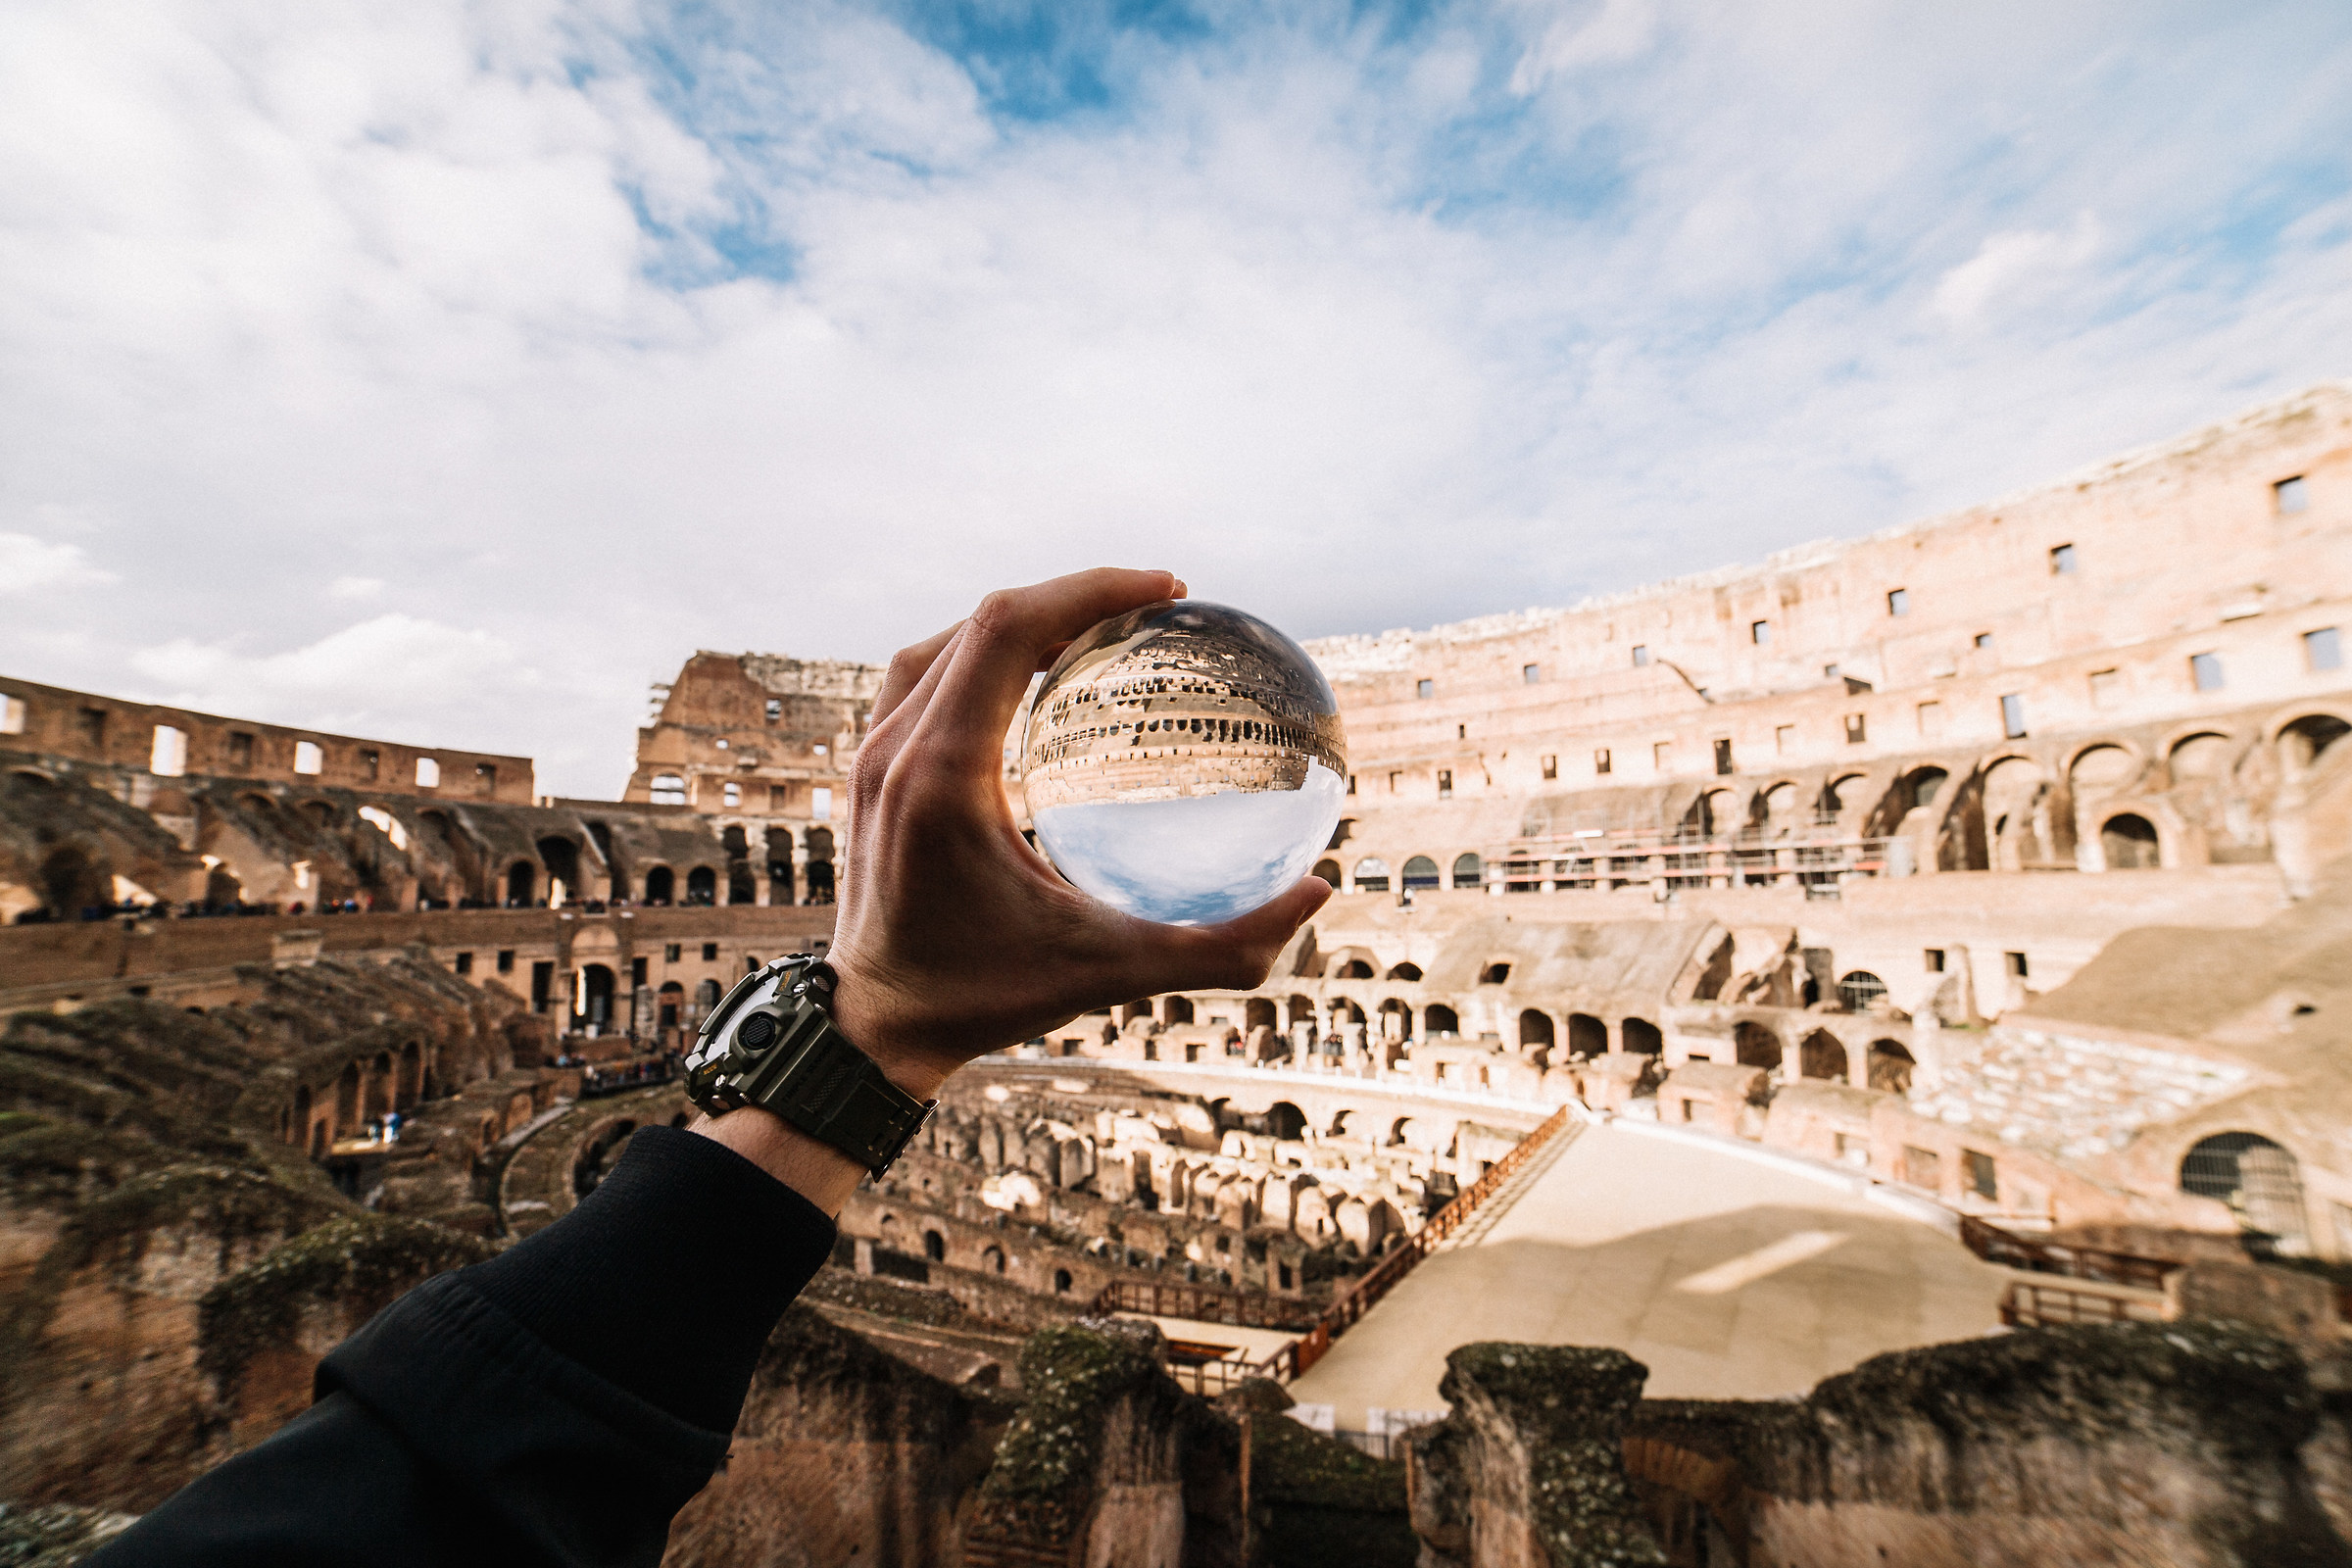 Colosseum...